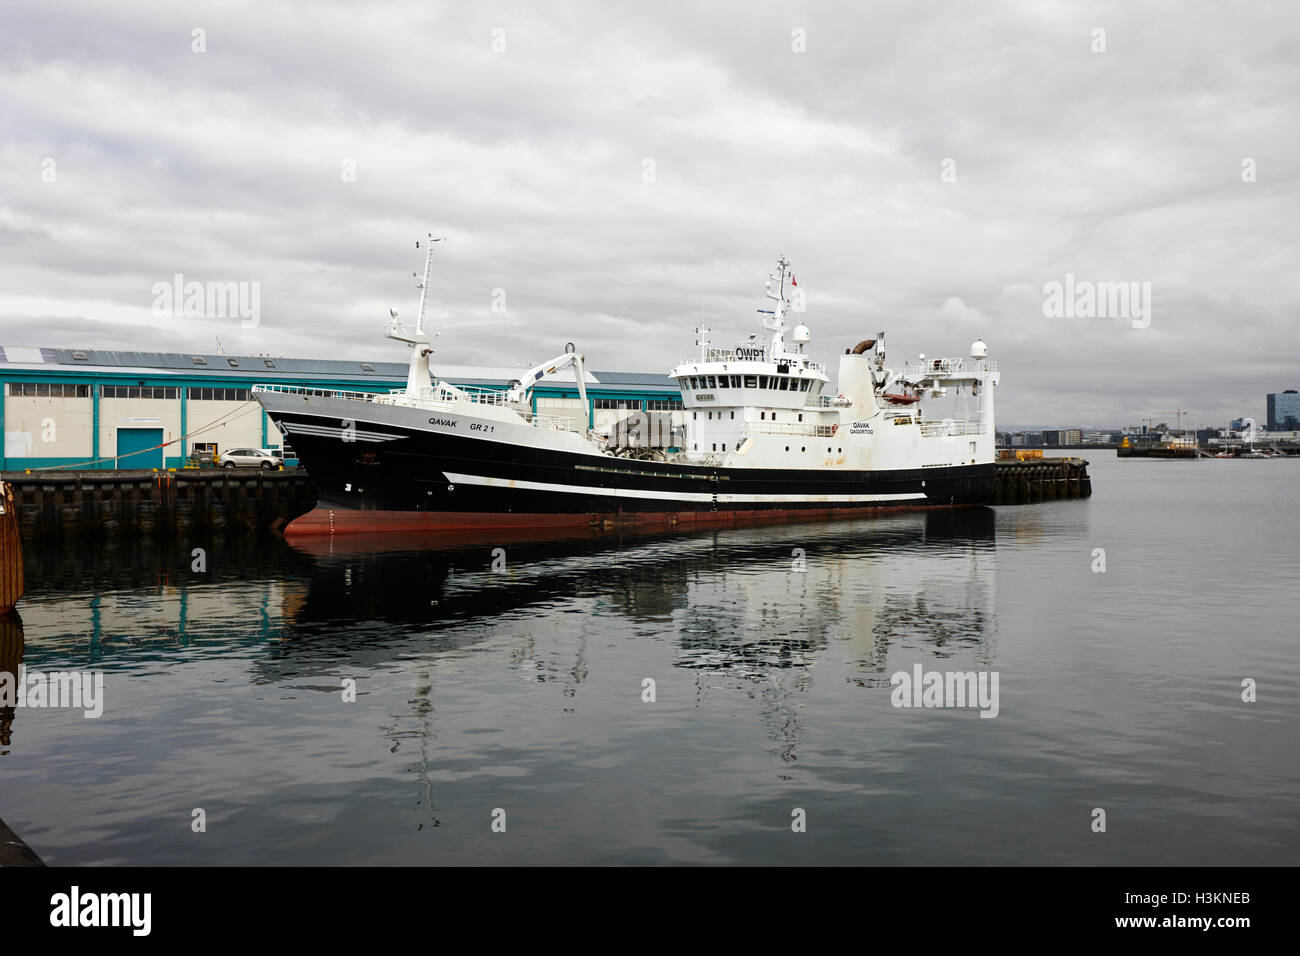 Groenlandia qavak arrastrero de pesca registrados atracados en Reykjavik, Islandia harbout Foto de stock